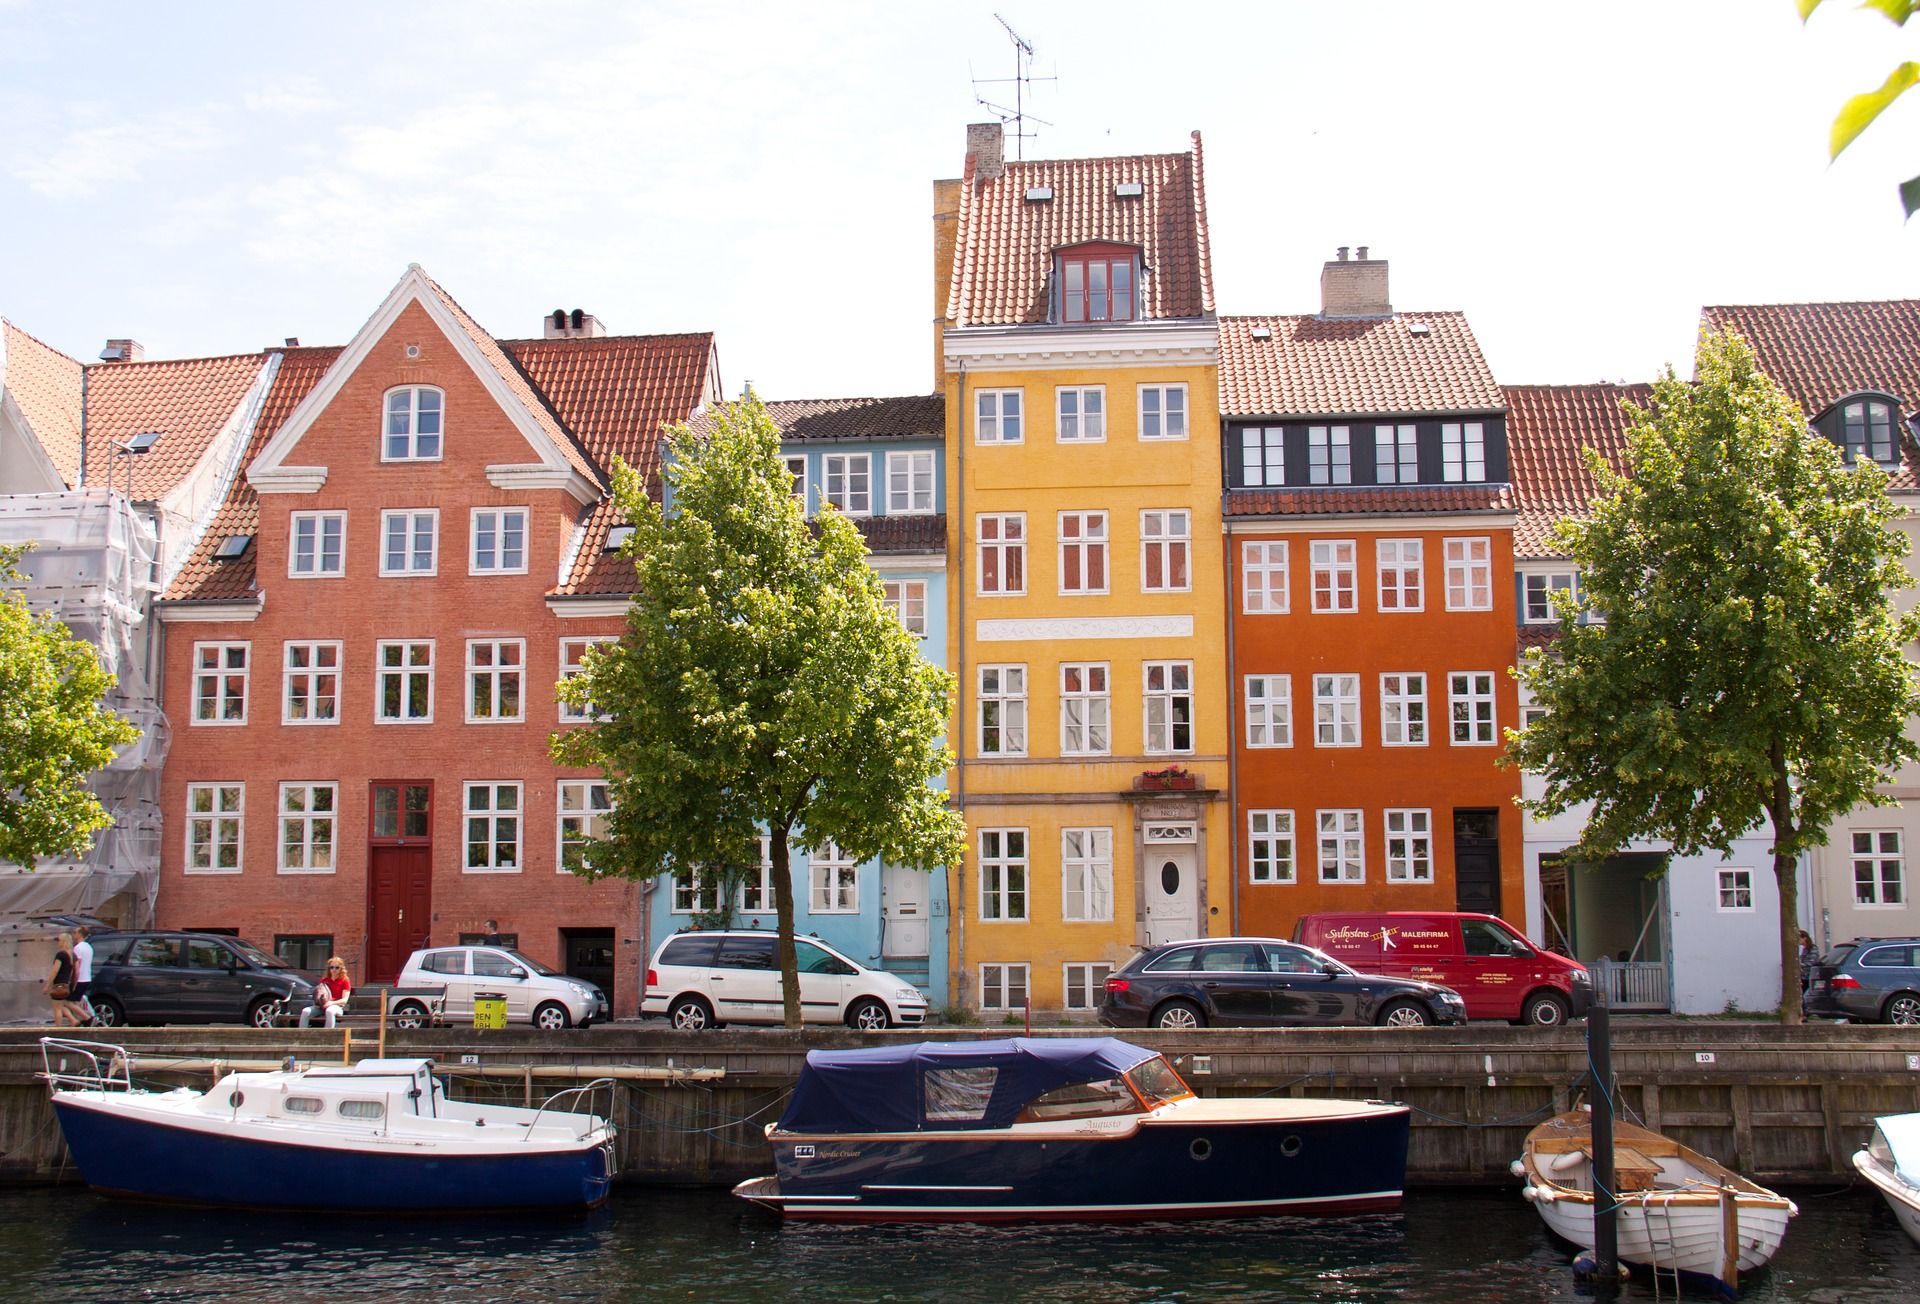 Business Round-Up: Copenhagen hit hardest by unemployment crisis